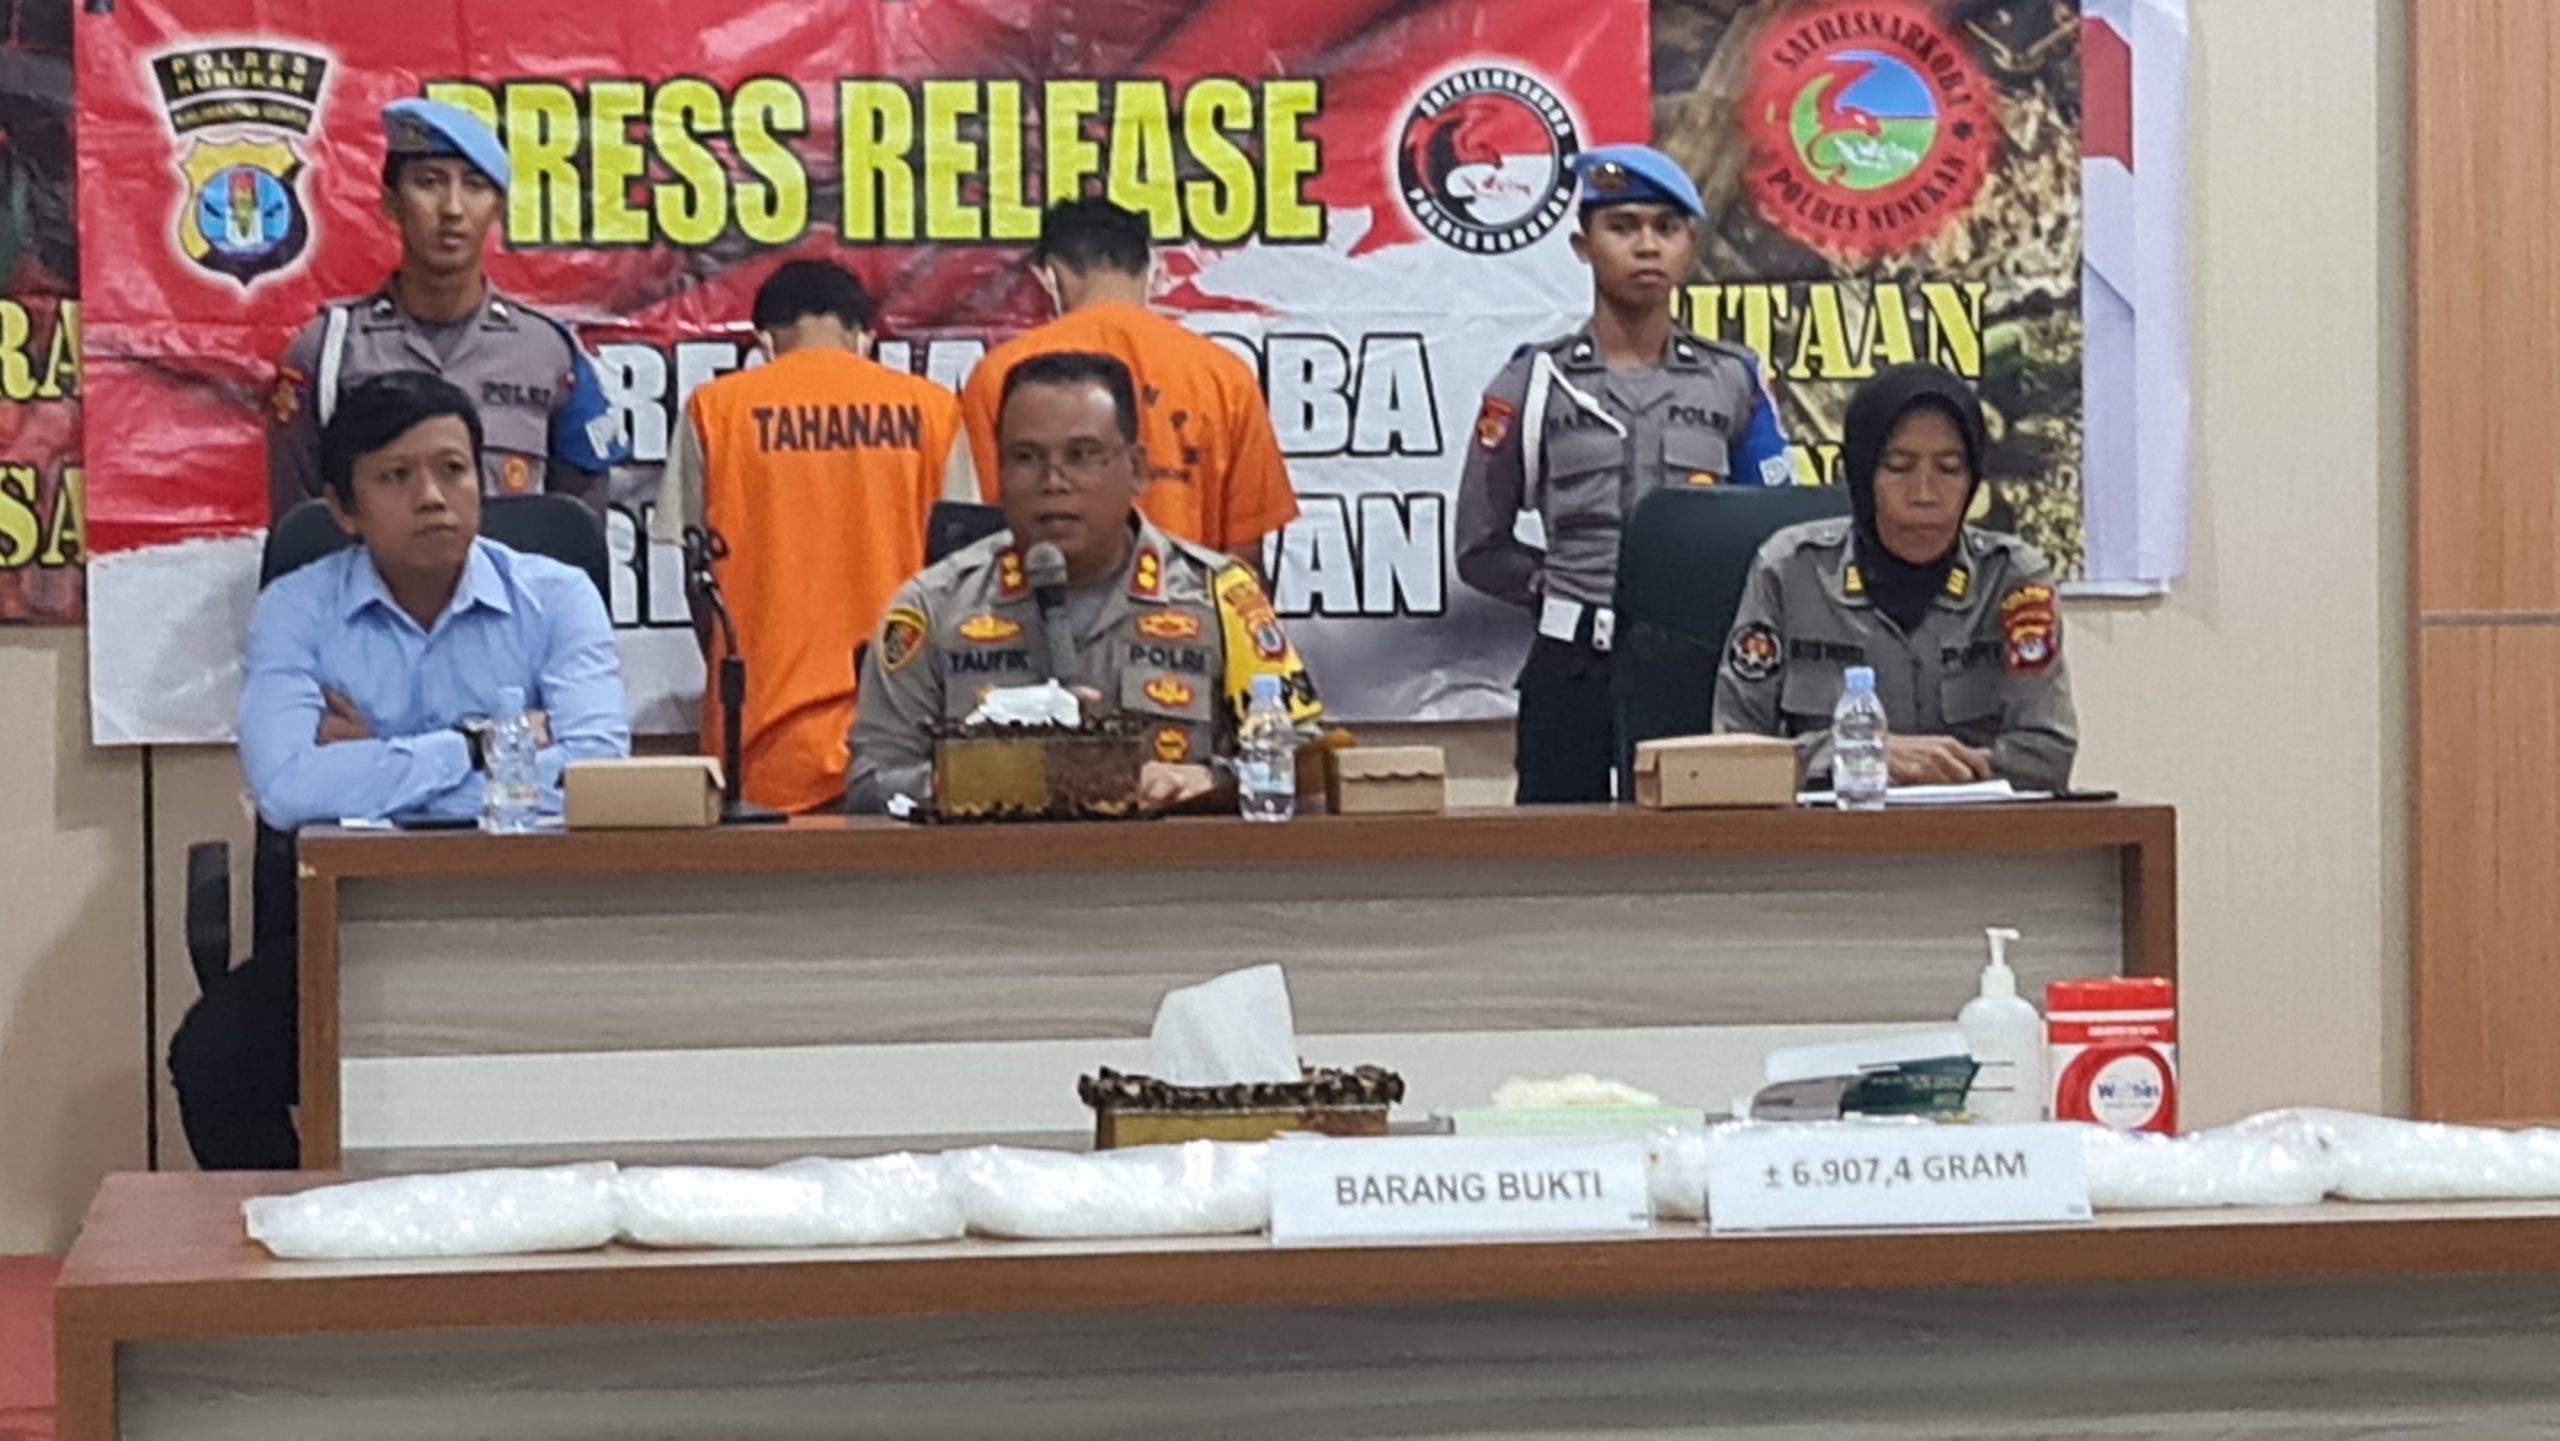 Pres Release Polres Nunukan Pengungkapan Narkotika Golongan I Jenis Sabu seberat 6.907,4 gram.